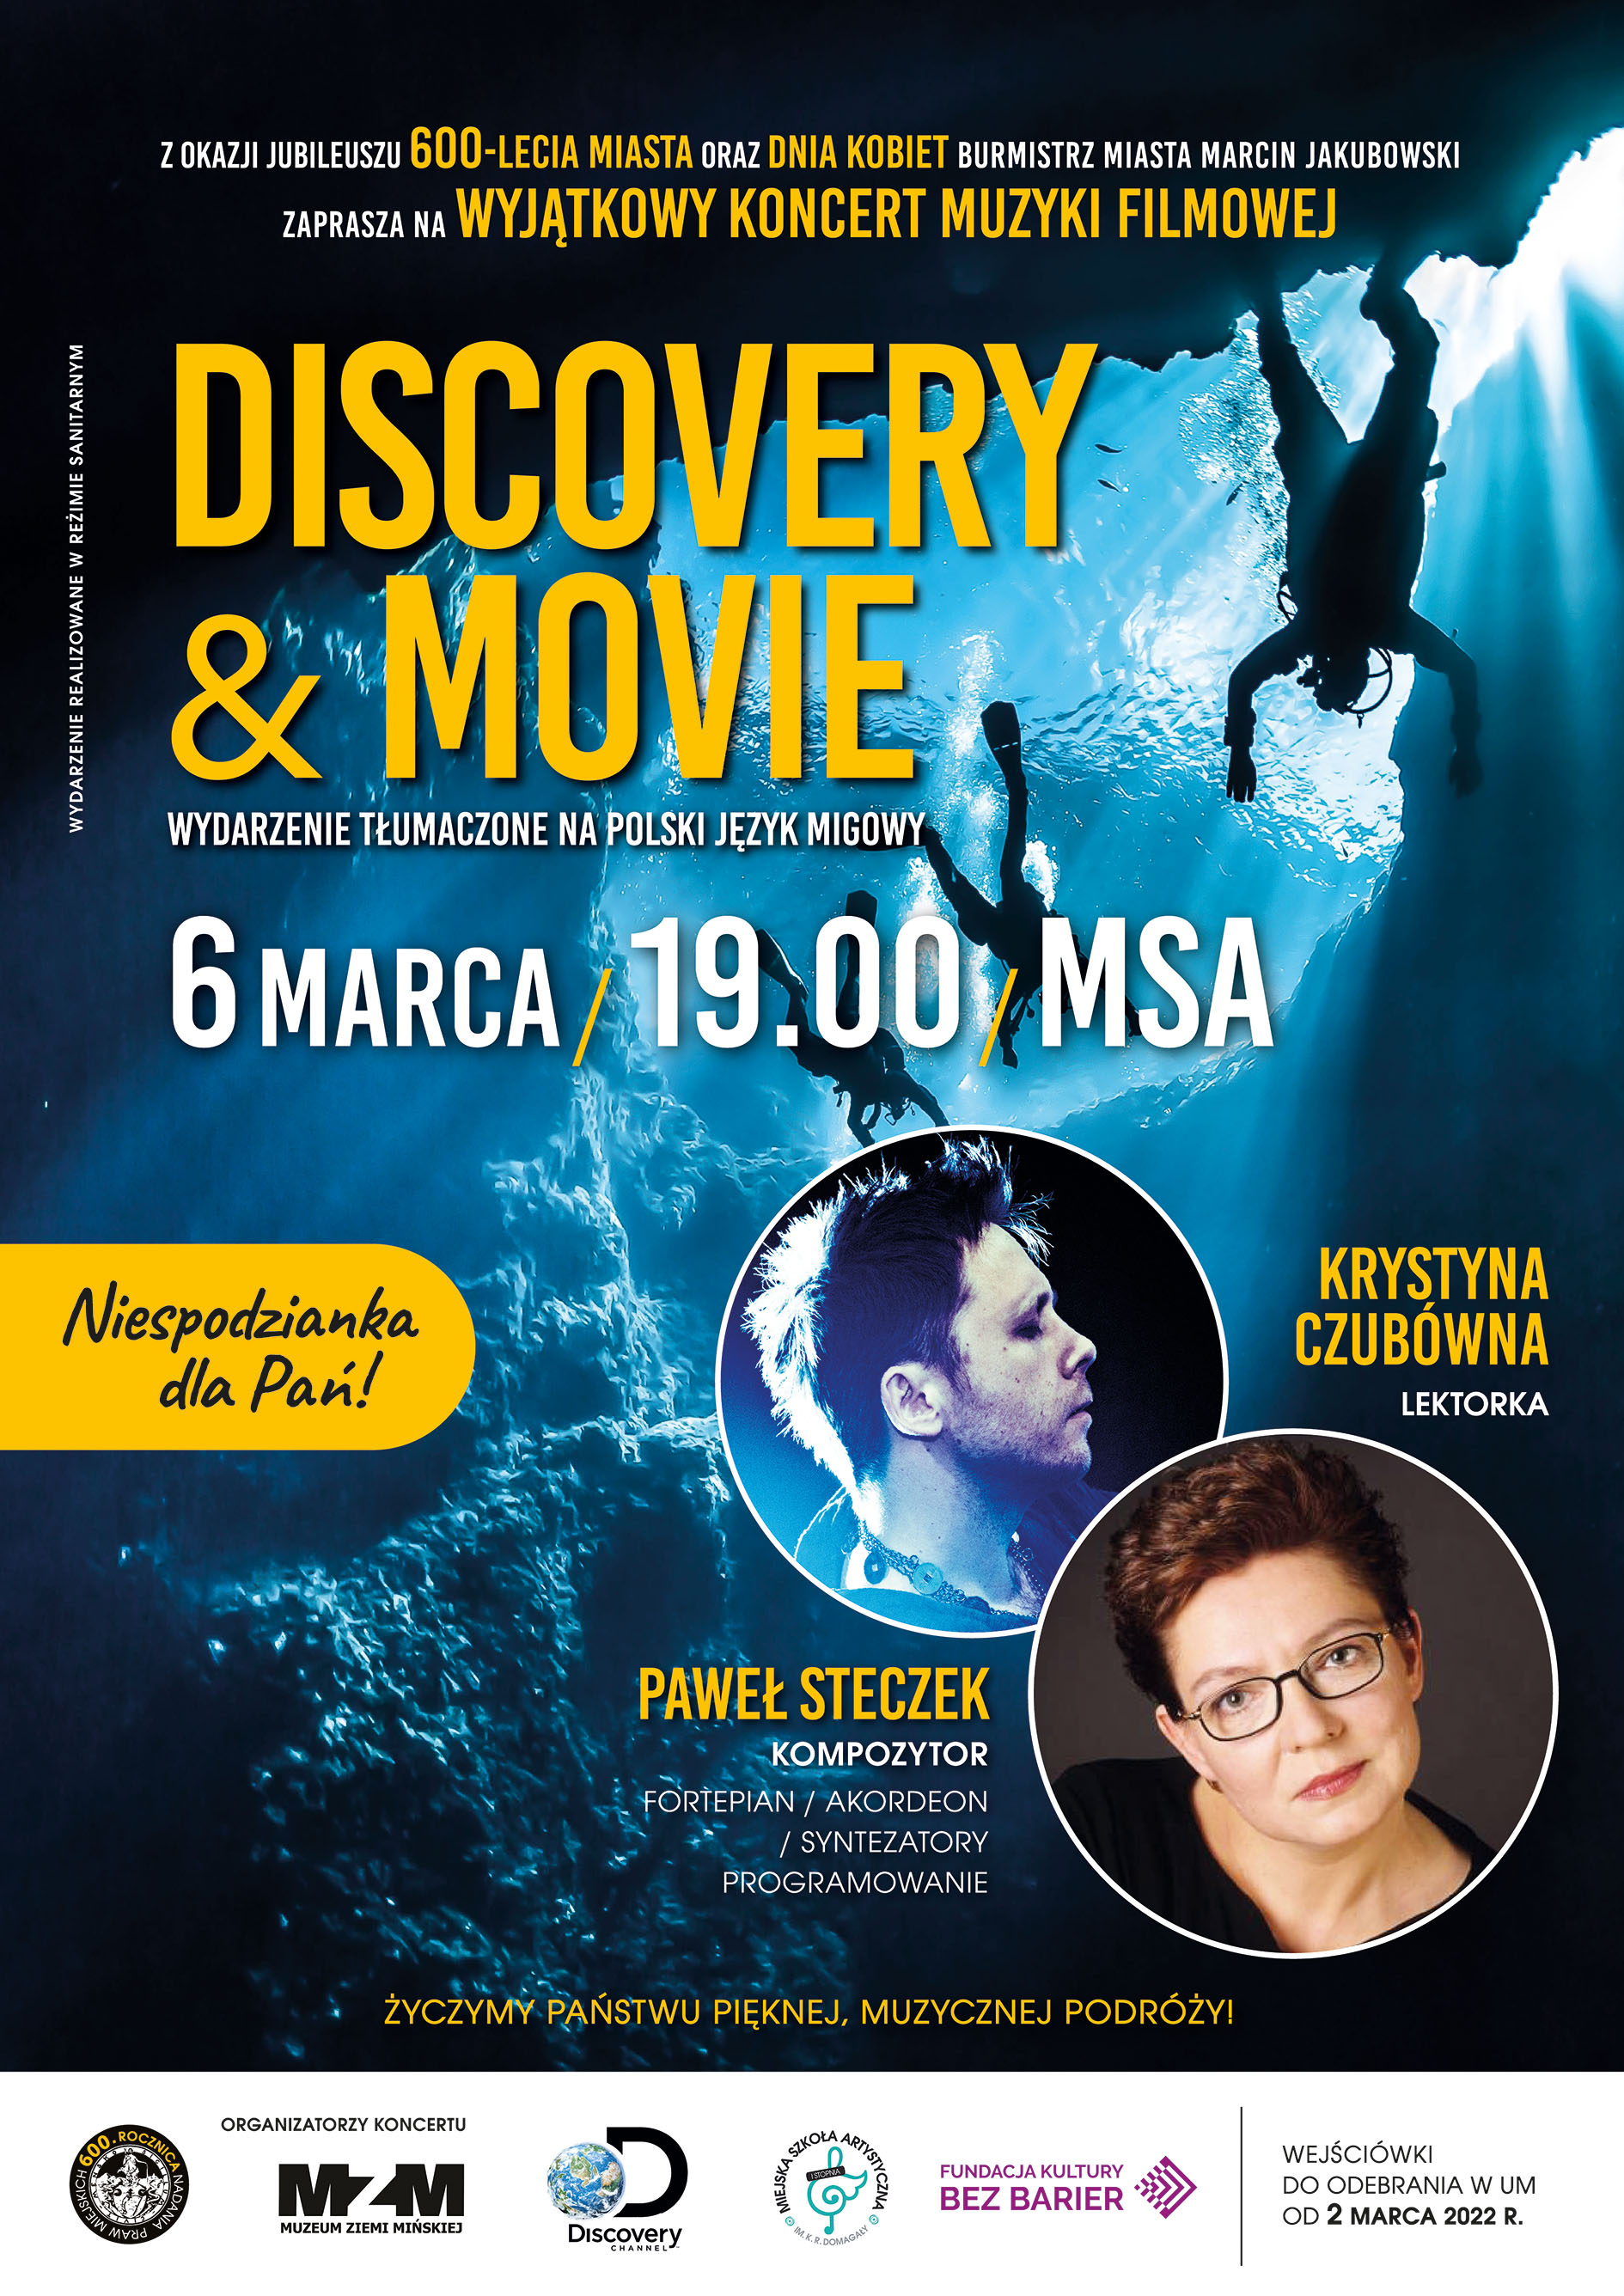 Zapraszamy na niezwykły koncert Discovery & Movie, który odbędzie się 6 marca o godzinie 19.00 w Miejskiej Szkole...